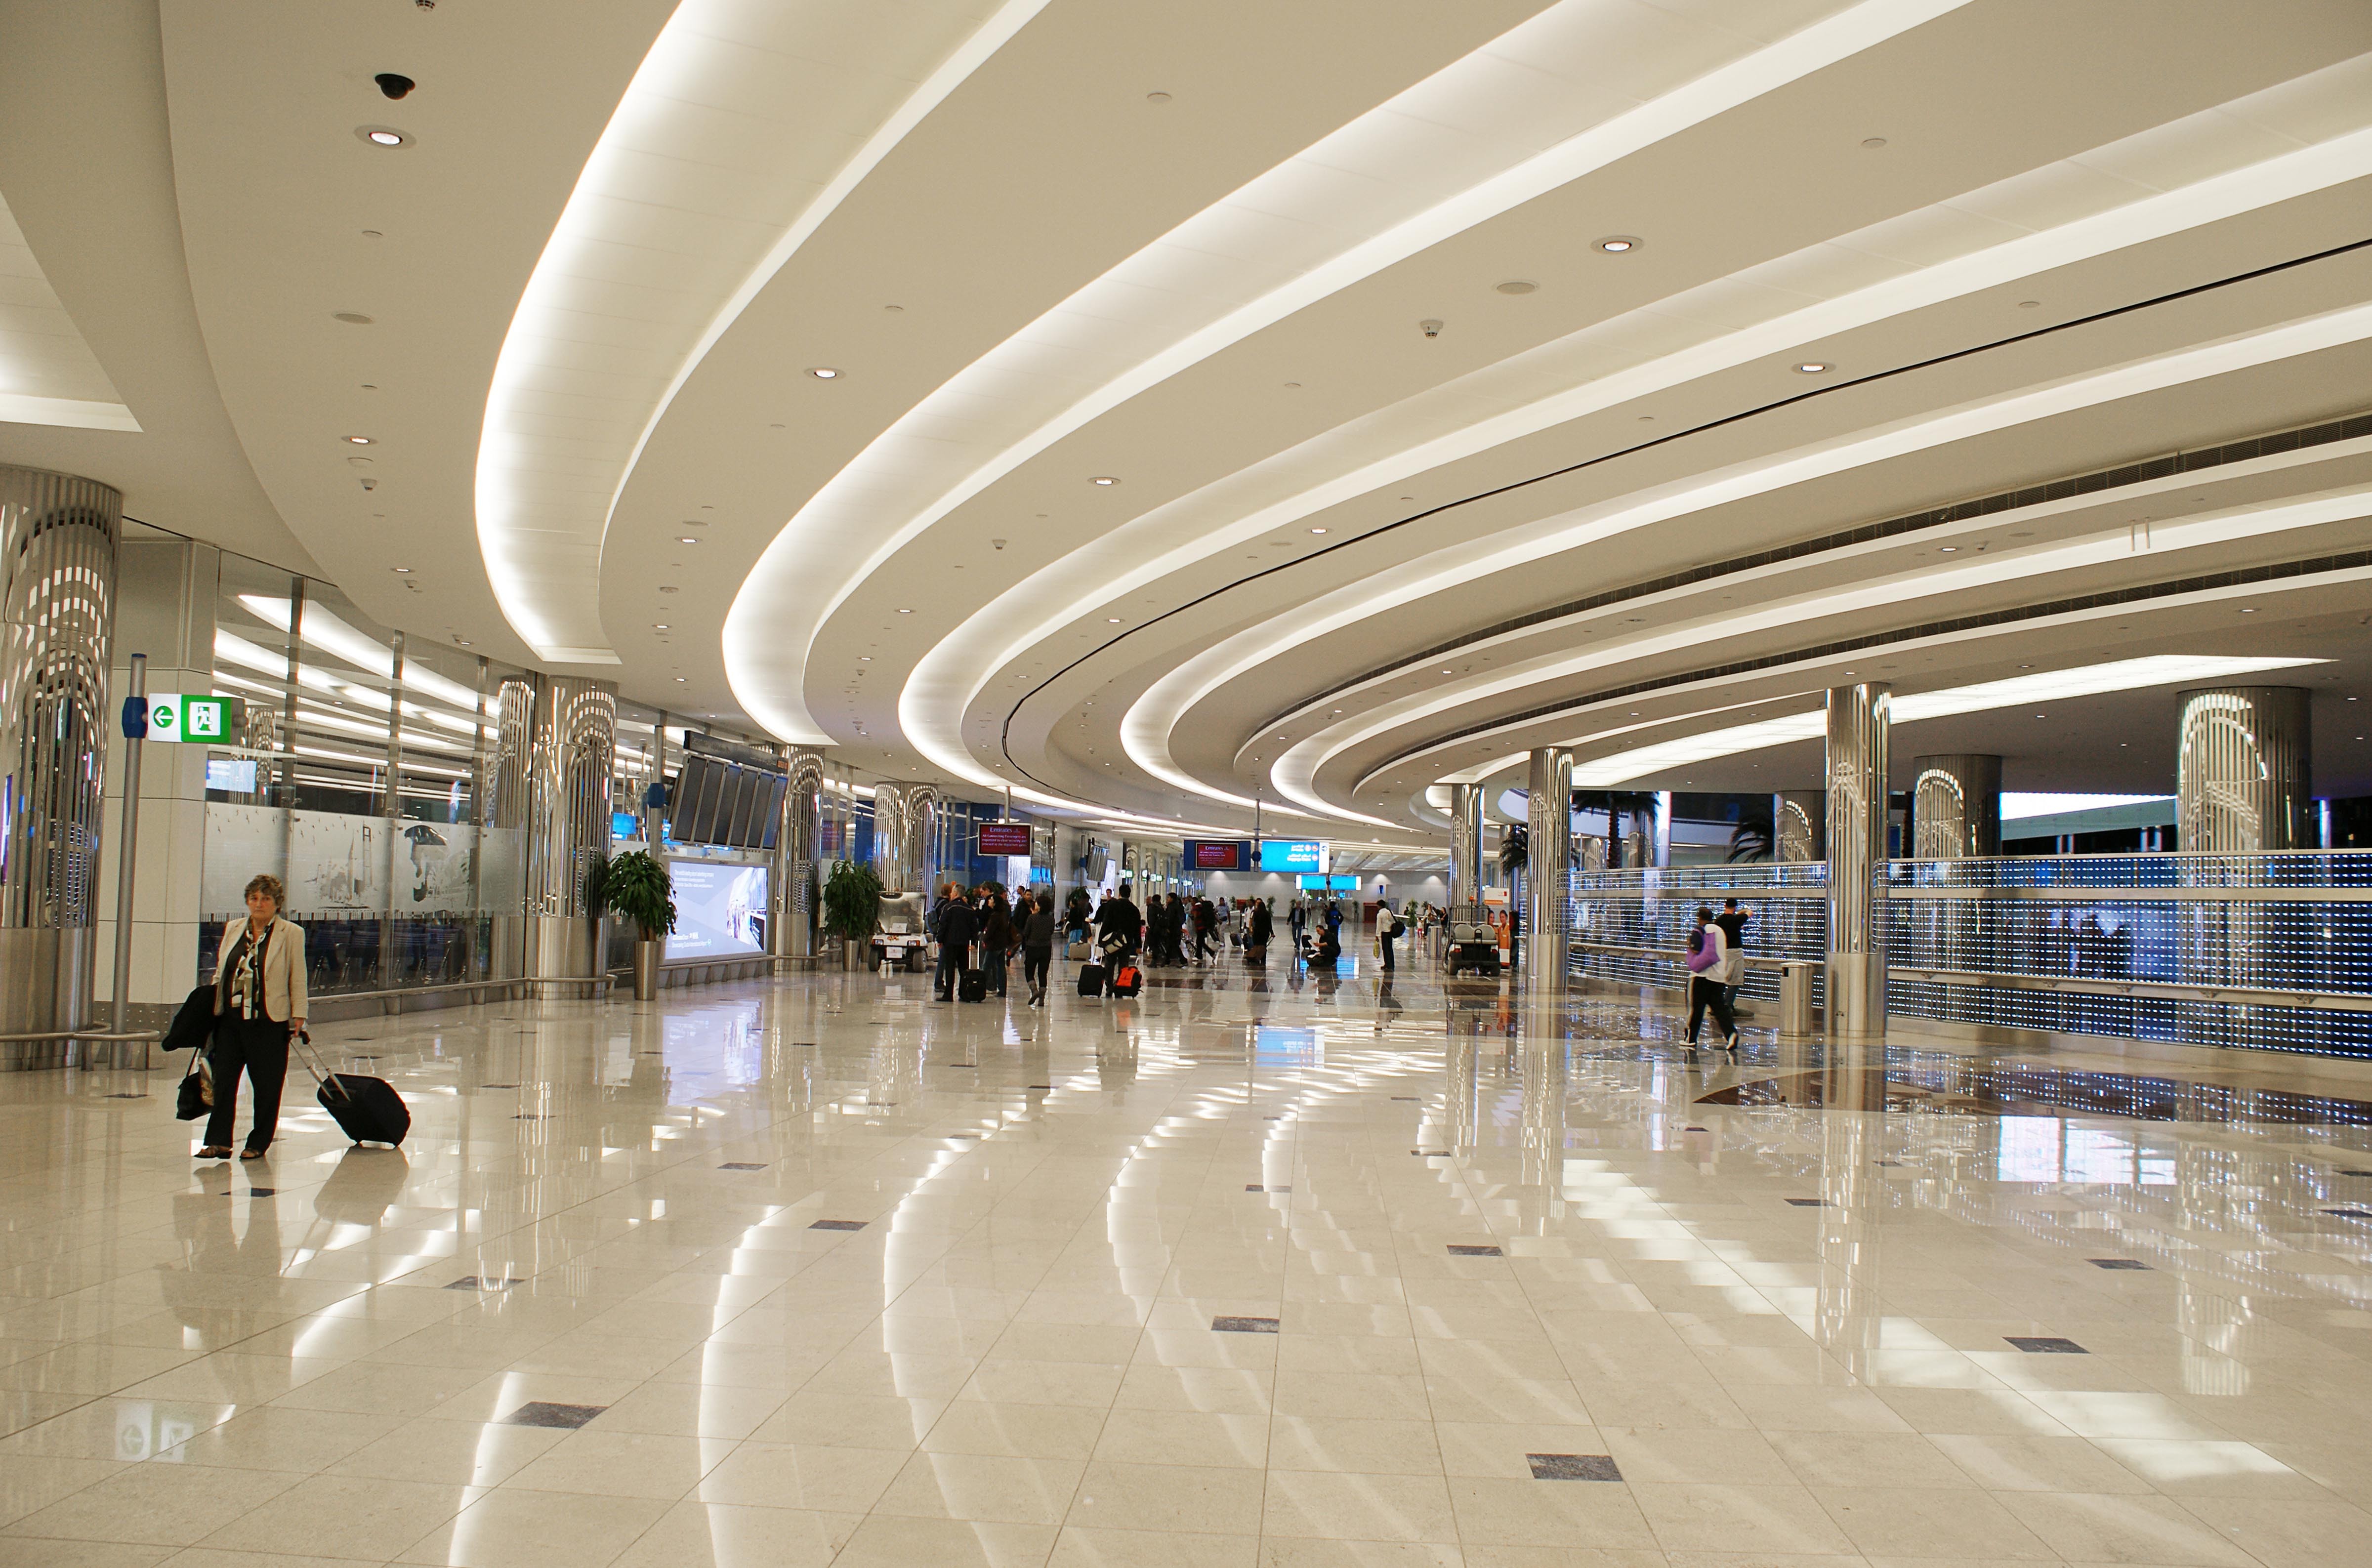 Aeroporto de Dubai, World Trade Center de Hong Kong, banco na Itália: rochas brasileiras são destaque em obras pelo mundo